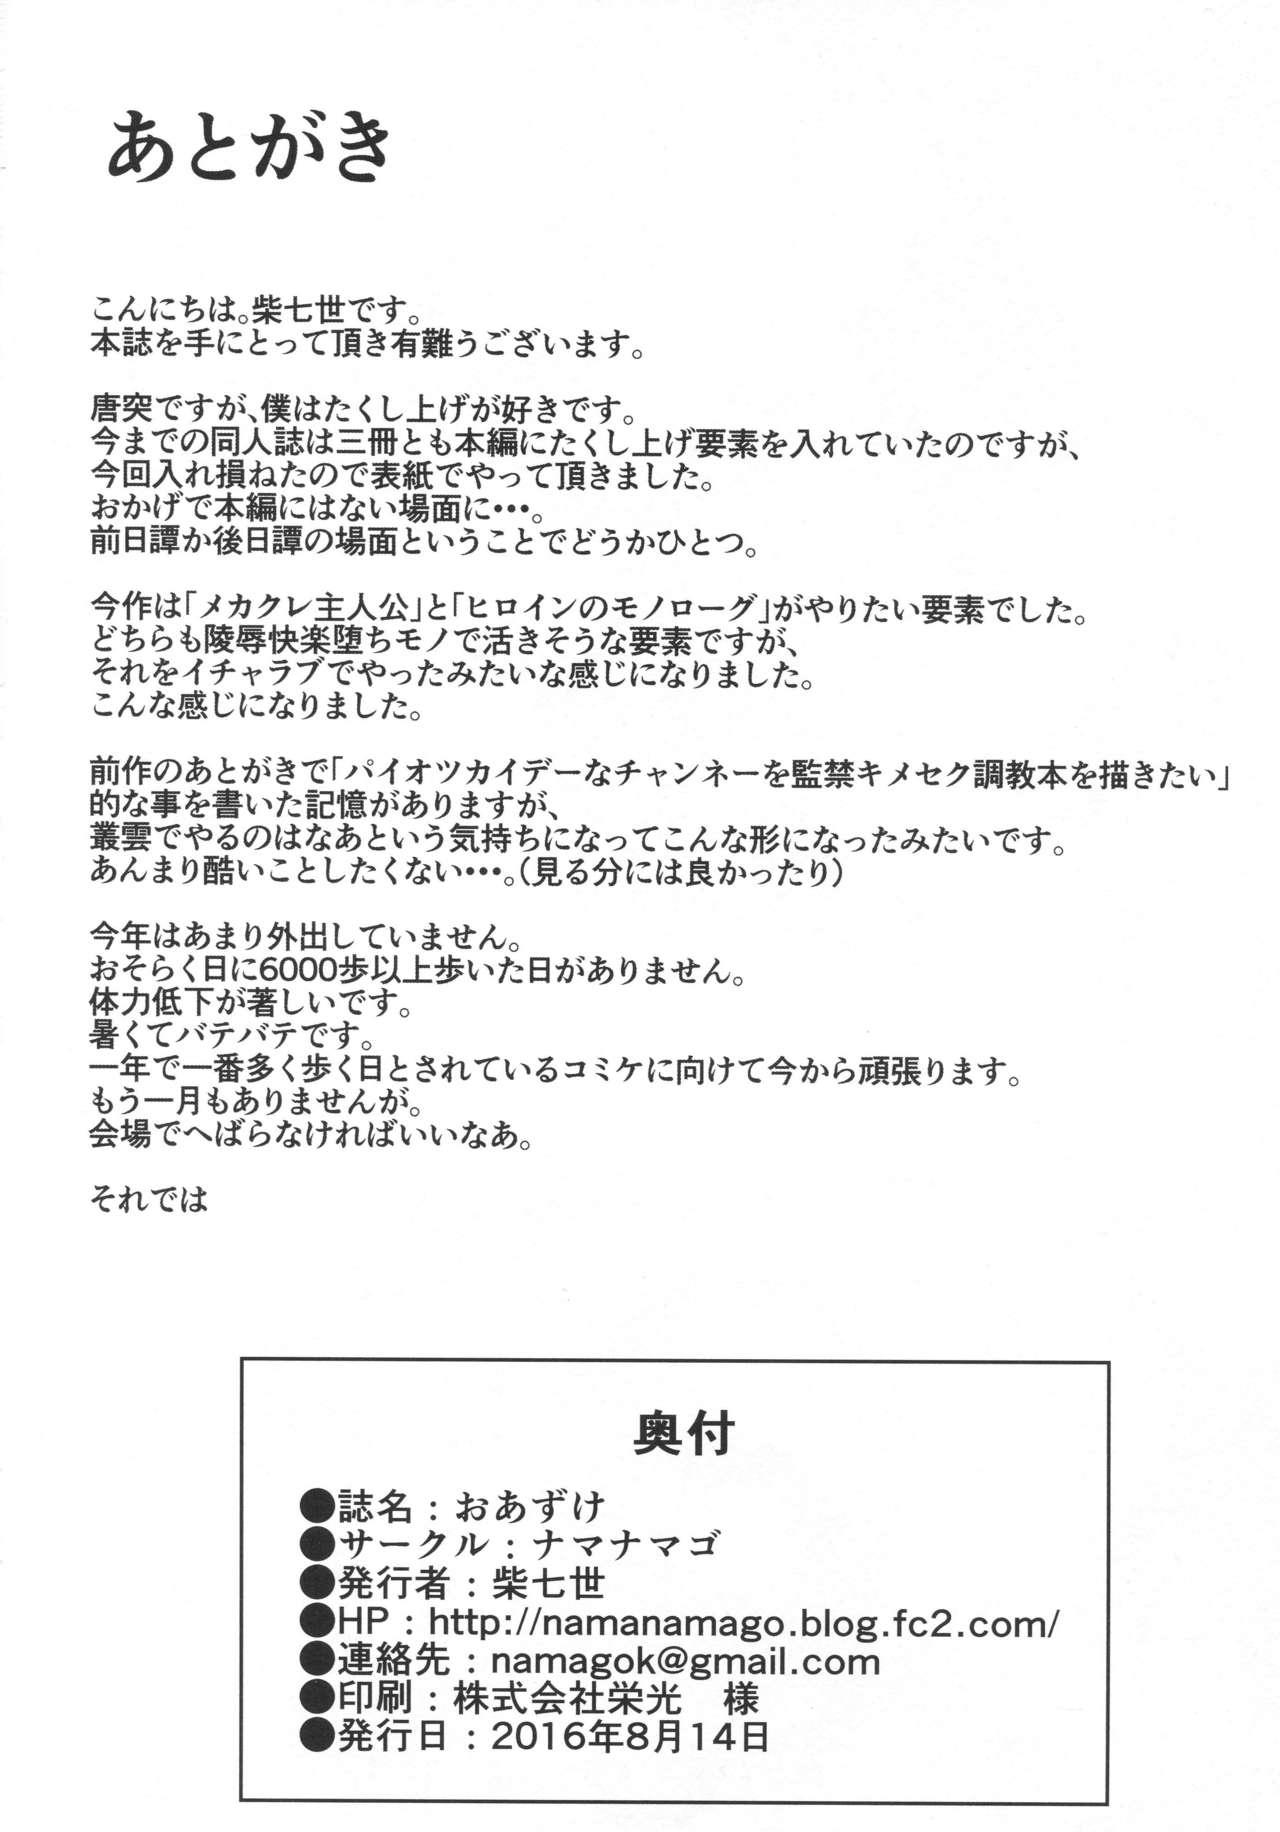 Cei Oazuke - Kantai collection Time - Page 25